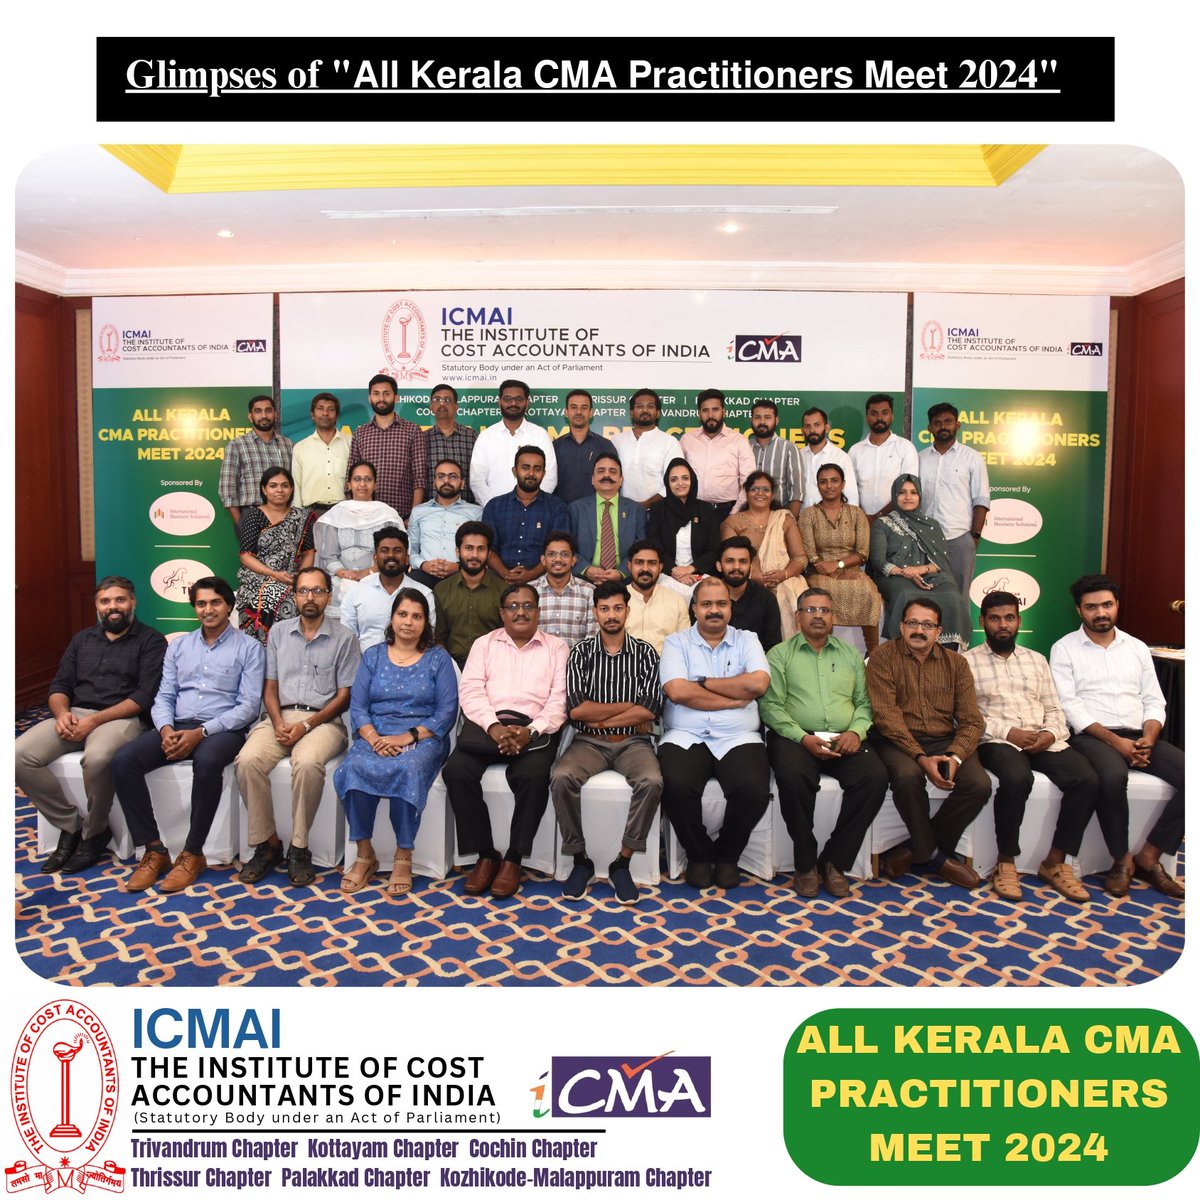 Glimpses of '𝗔𝗹𝗹 𝗞𝗲𝗿𝗮𝗹𝗮 𝗖𝗠𝗔 𝗣𝗿𝗮𝗰𝘁𝗶𝘁𝗶𝗼𝗻𝗲𝗿𝘀 𝗠𝗲𝗲𝘁 2024'jointly organised by ICMAI Kerala Region Chapters on 06.01.2024

@narendramodi @AmitShah @nsitharaman @nsitharamanoffc @Rao_InderjitS @ICMAICMA

#cma #icmai #pcmameet2024 #costandmanagementaccountant